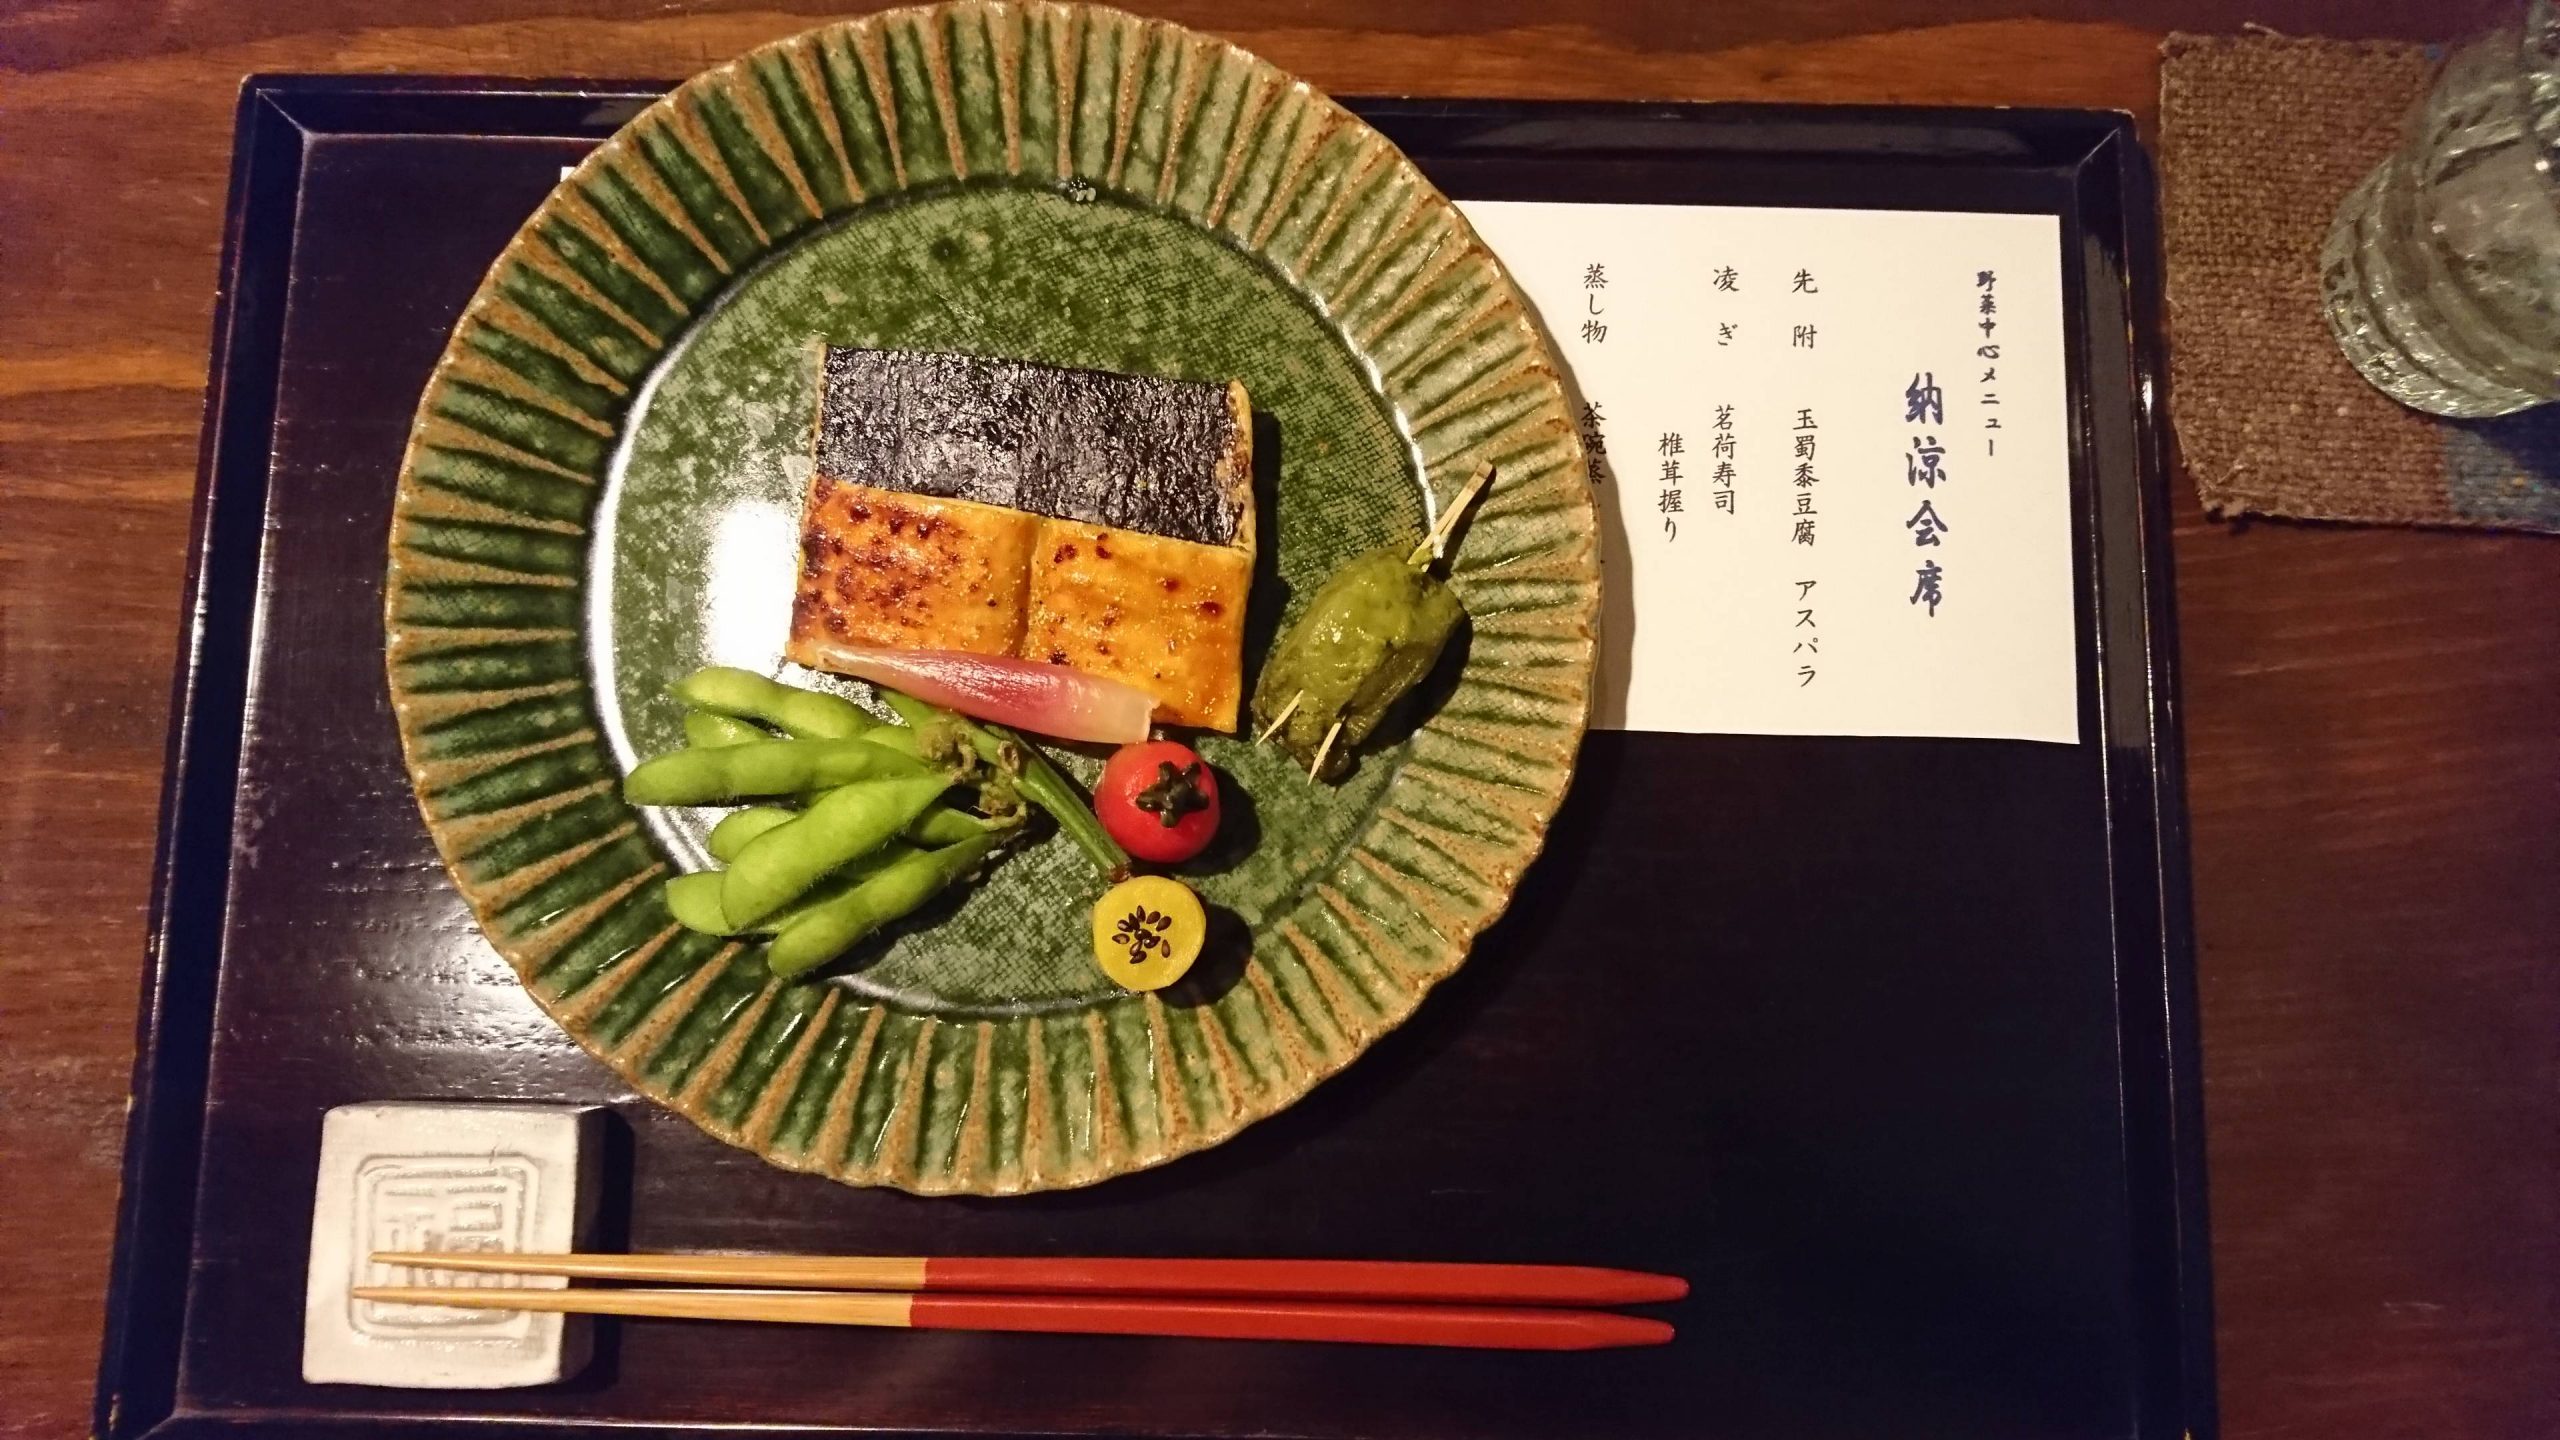 Menu et plat dans un restaurant tradionnel japonais, Tokyo, 2017.